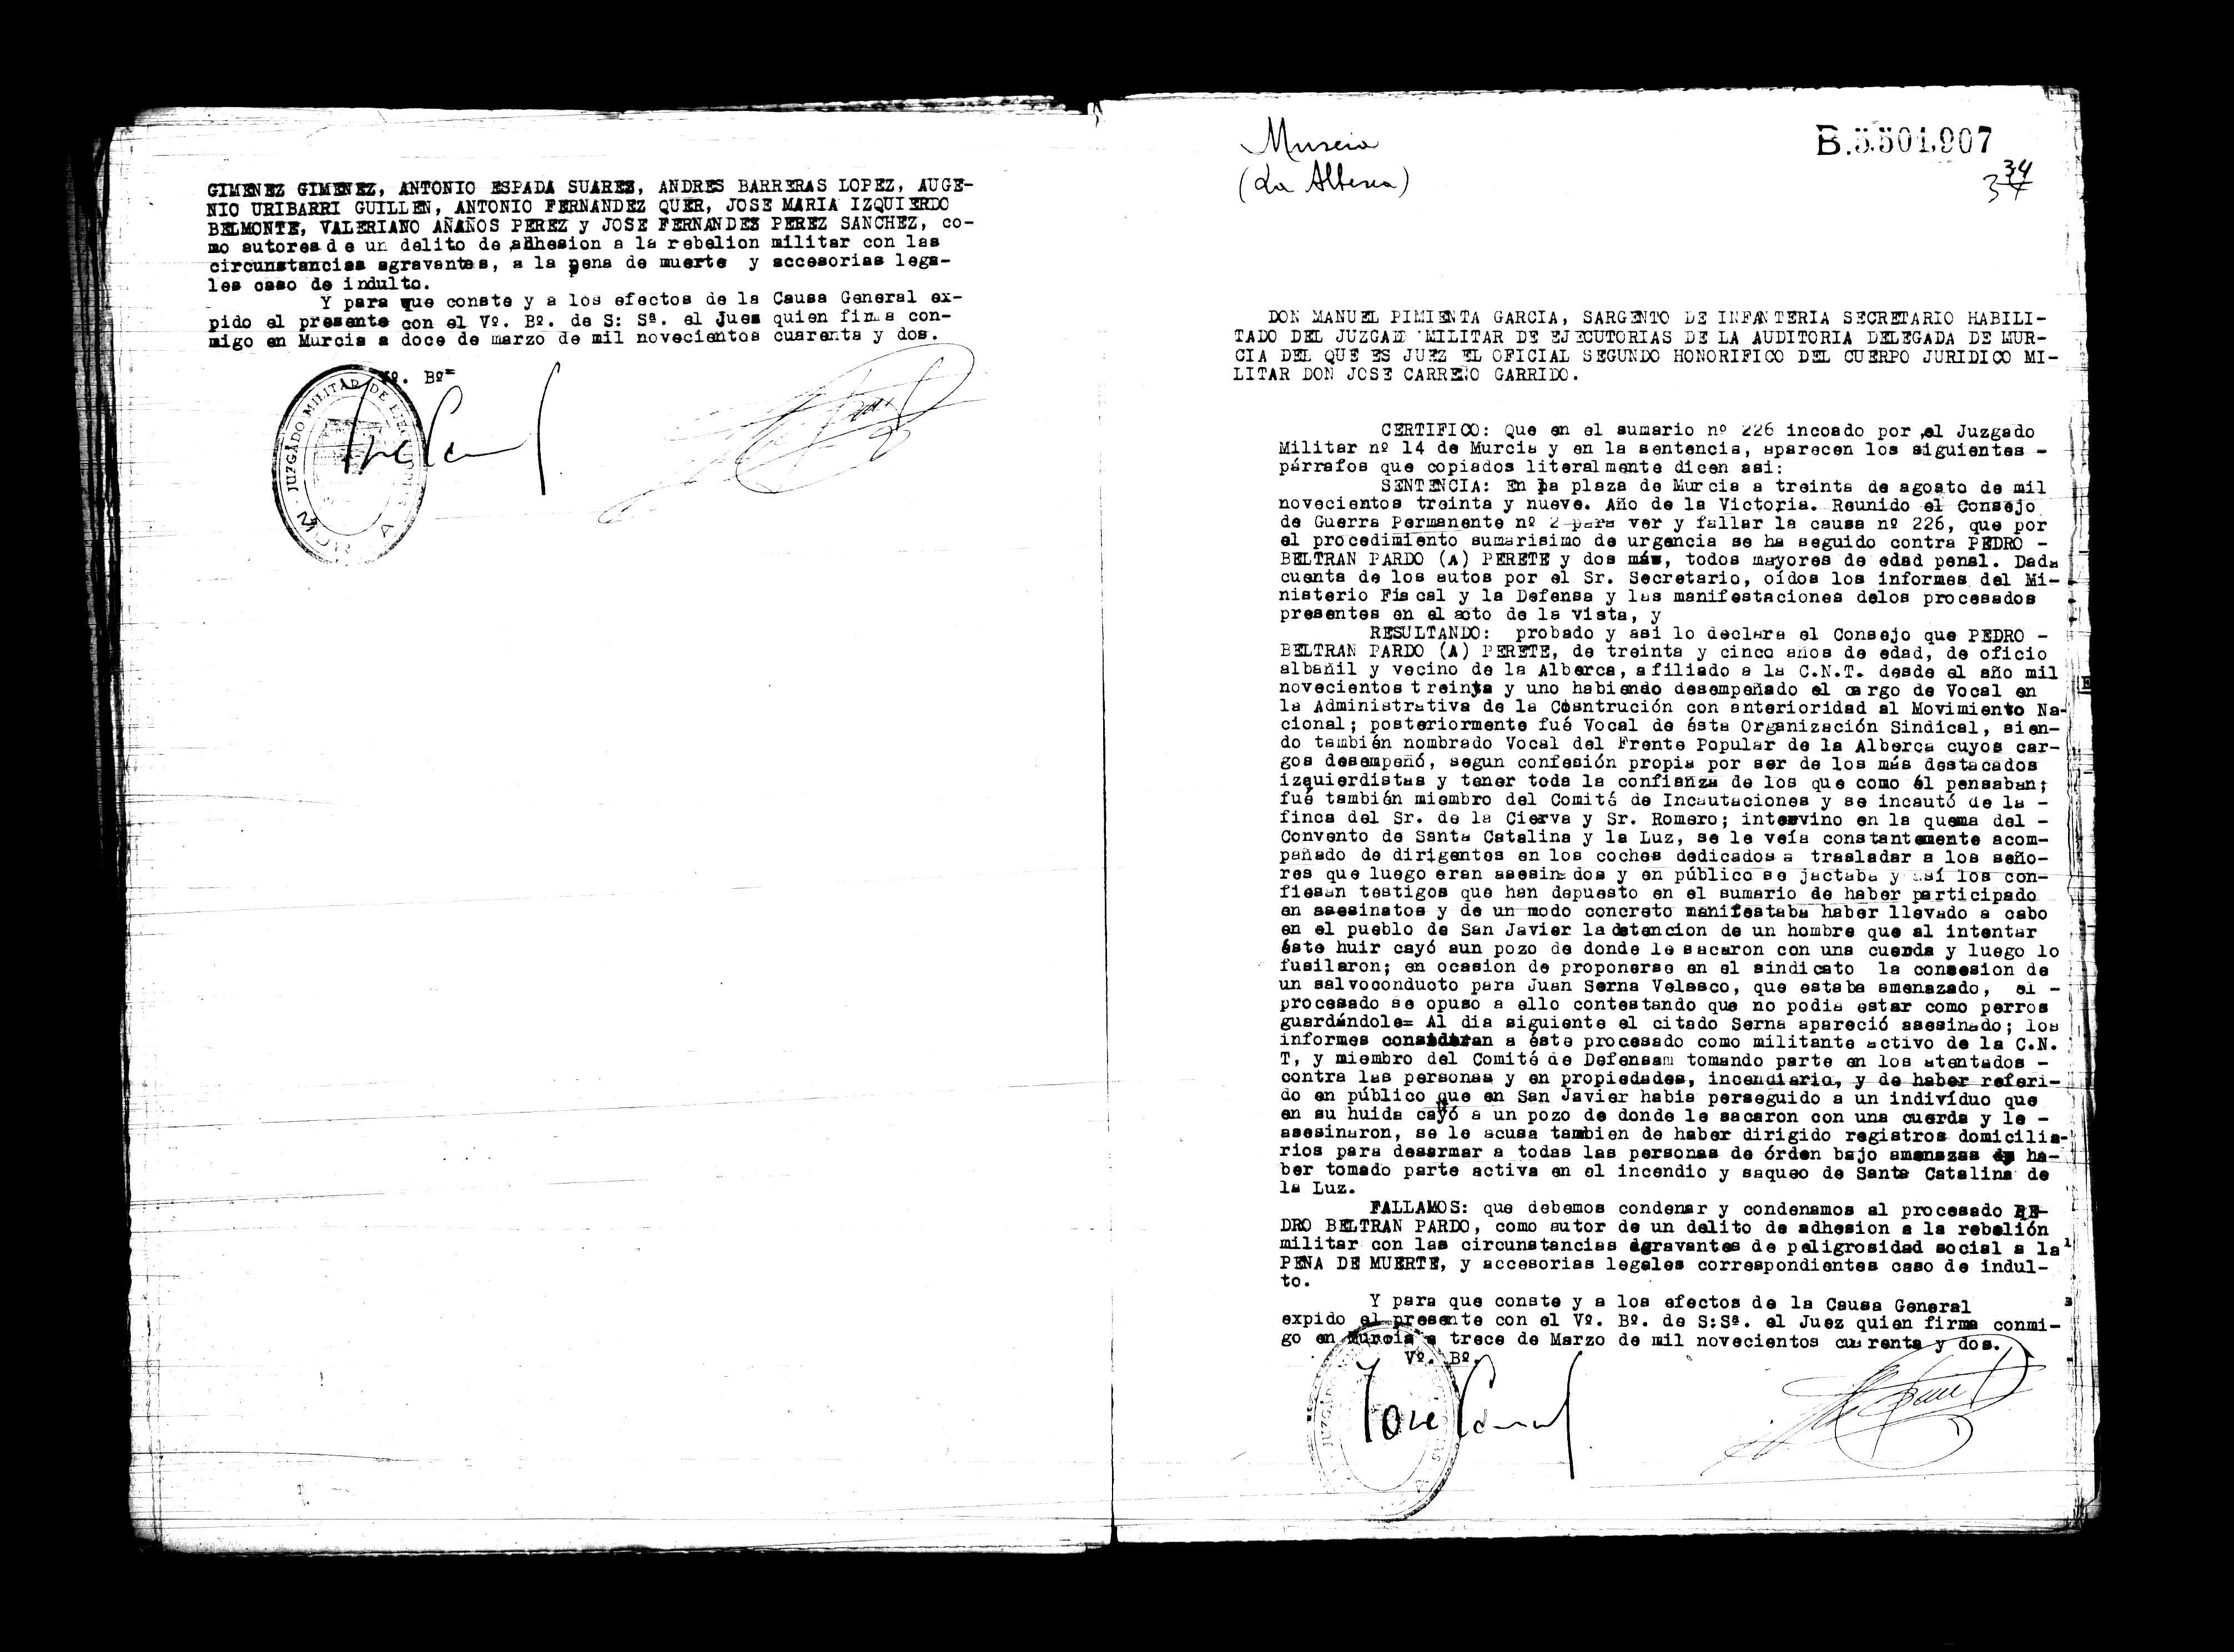 Certificado de la sentencia pronunciada contra Pedro Beltrán Pardo, causa 226, el 30 de agosto de 1939 en Murcia